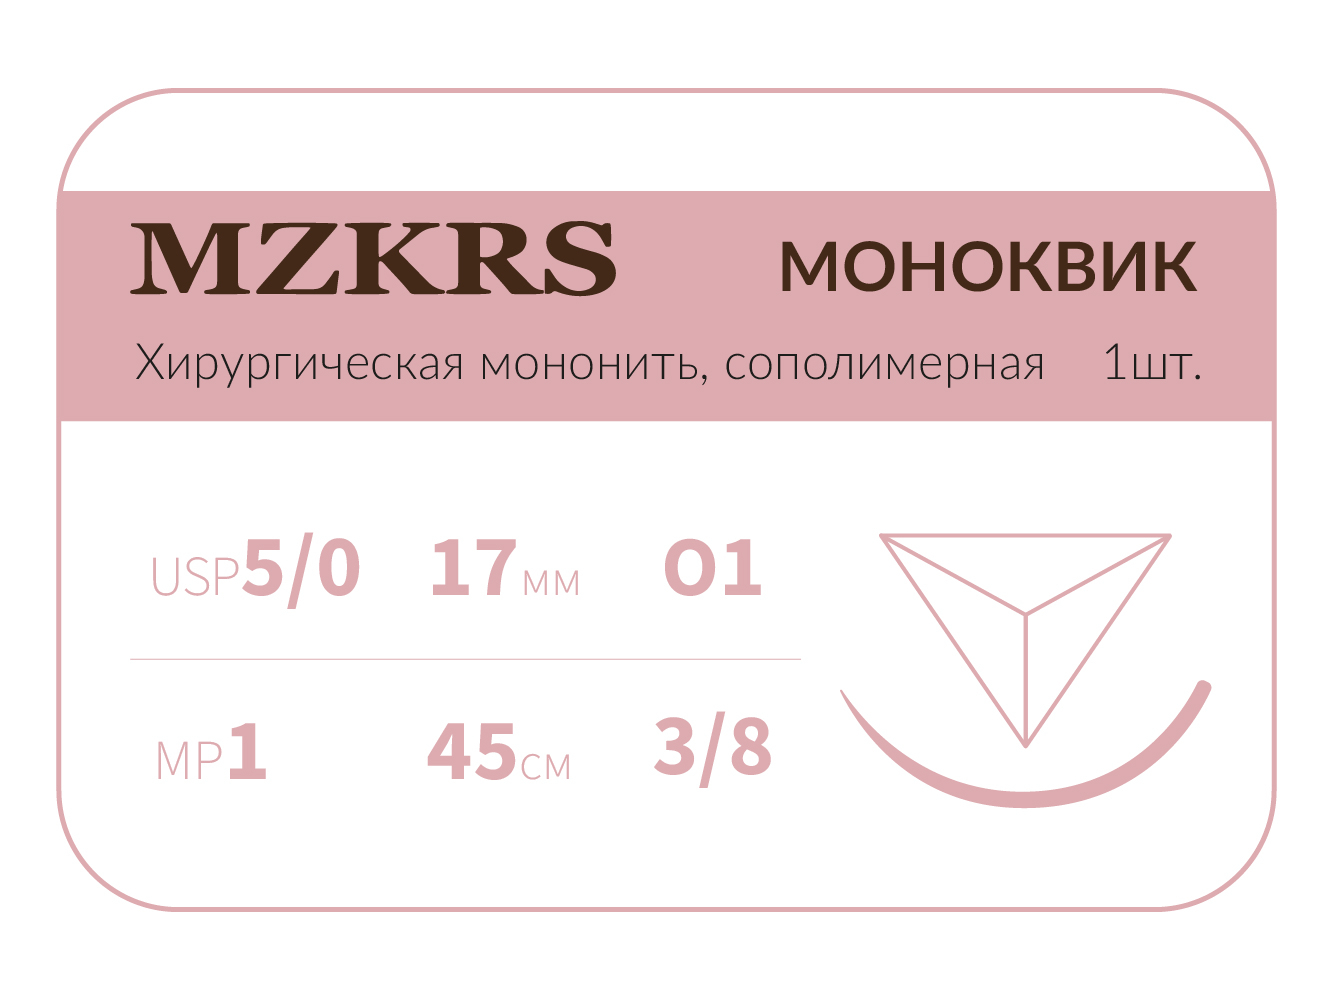 1738О1 Premium-5/0 (1)45 МОНК МОНОКВИК хирургическая мононить, сополимерная, MZKRS (Россия)